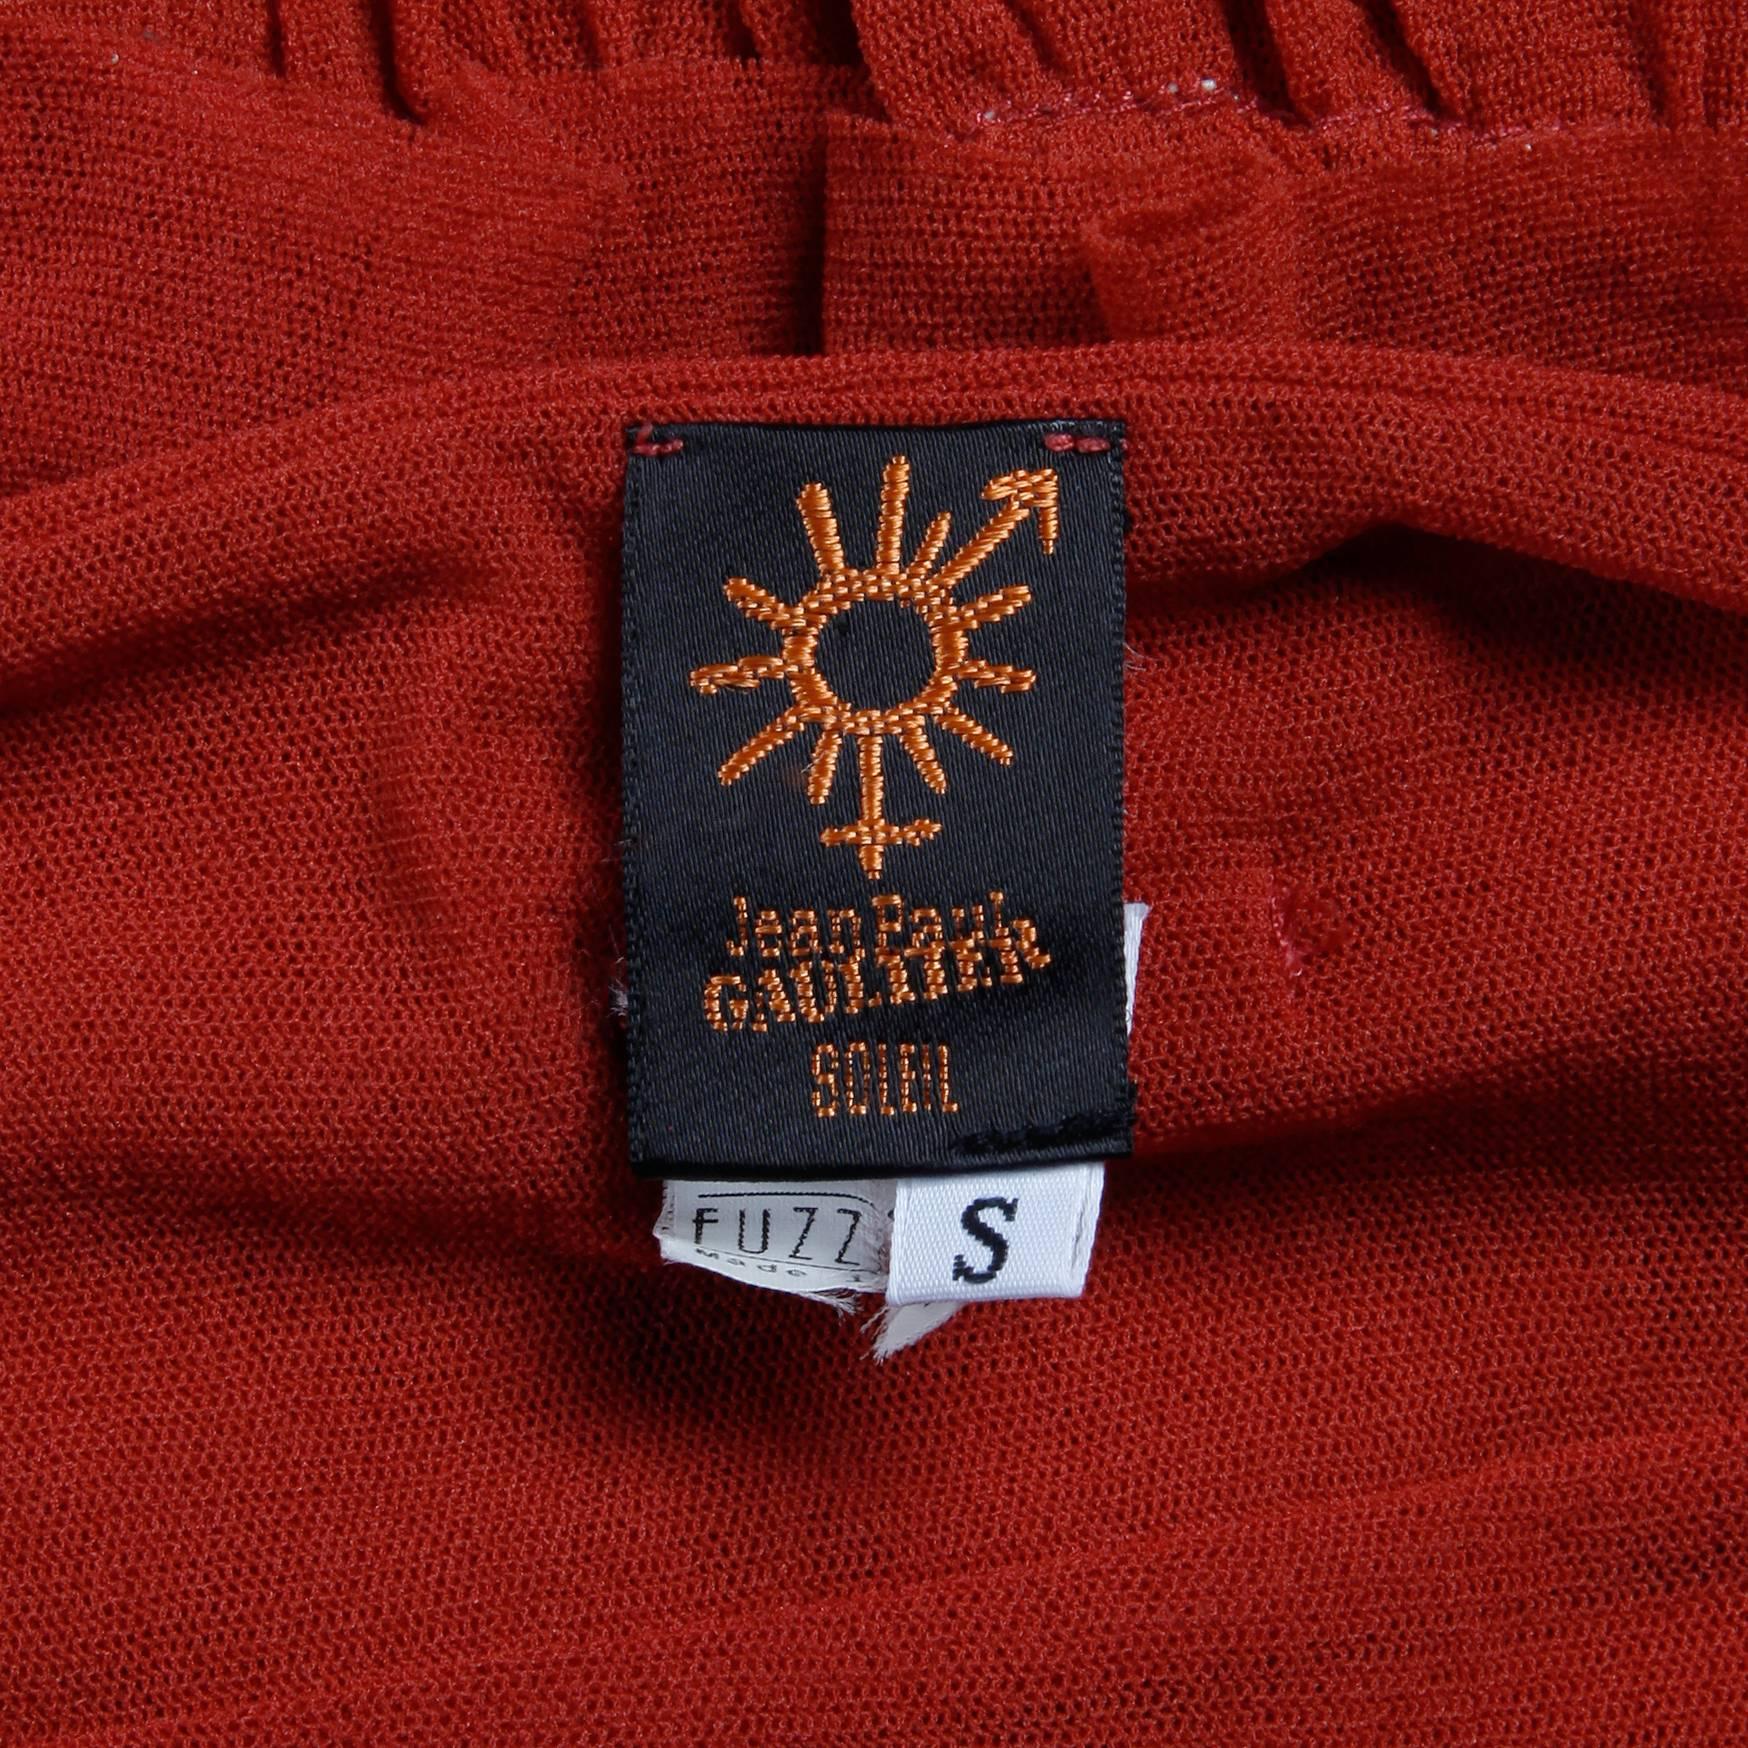 Robe rouge brique Jean Paul Gaultier avec ourlet à volants. Entièrement doublé, sans fermeture (s'enfile par-dessus la tête). 100% nylon. La taille marquée est petite. Le buste mesure 24-36